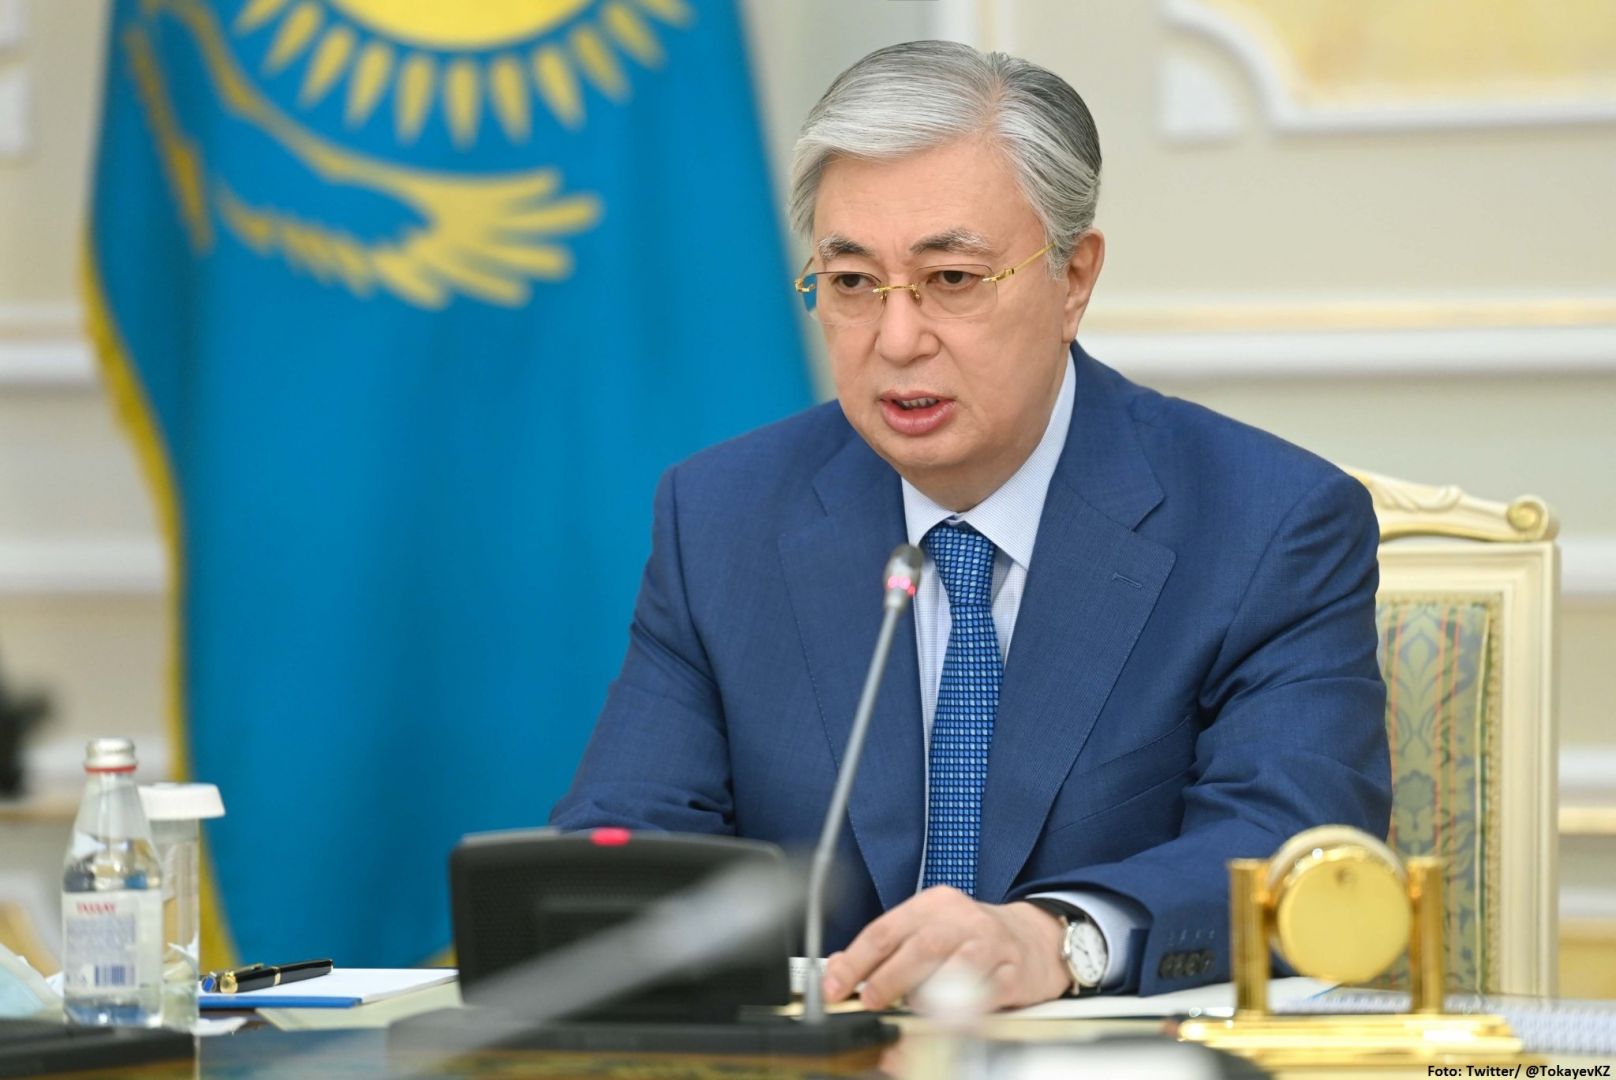 Nasarbajew ist nicht mehr der Vorsitzender des Sicherheitsrats von Kasachstan